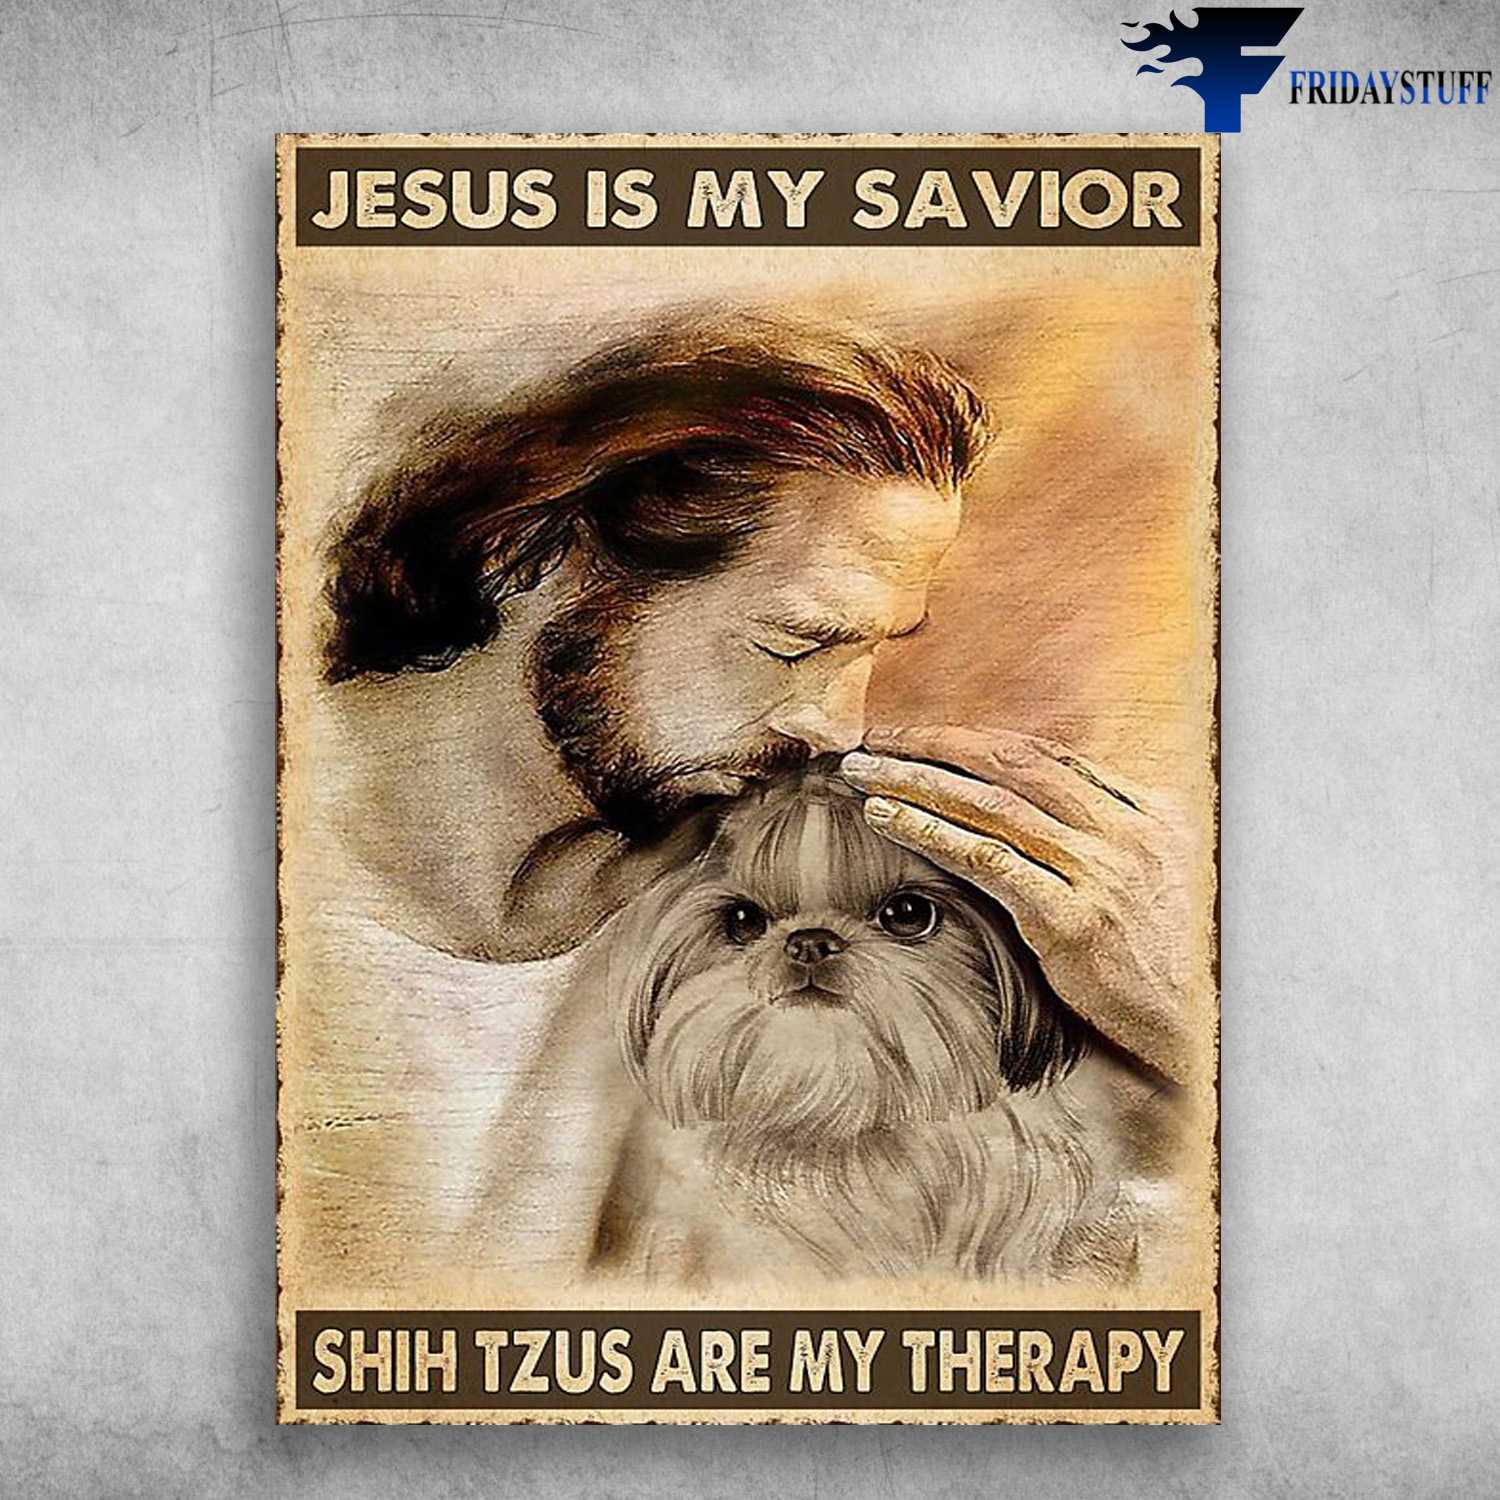 God And Shih Tzus - Jesus Is My Savior, Shih Tzu Are My Therapy, Jesus Dog Lover